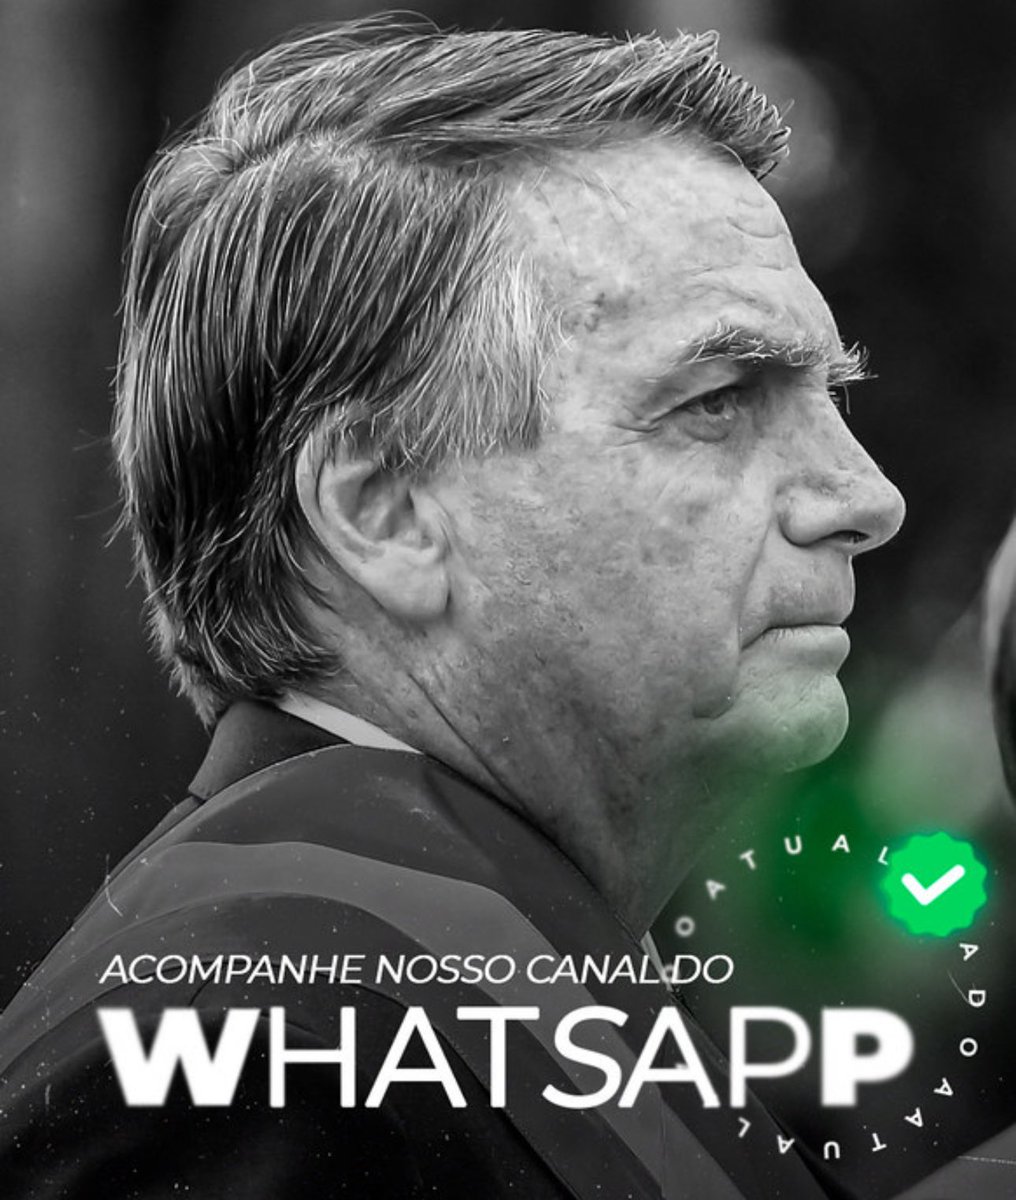 - Nosso canal do WhatsApp atualizado: whatsapp.com/channel/0029Va…